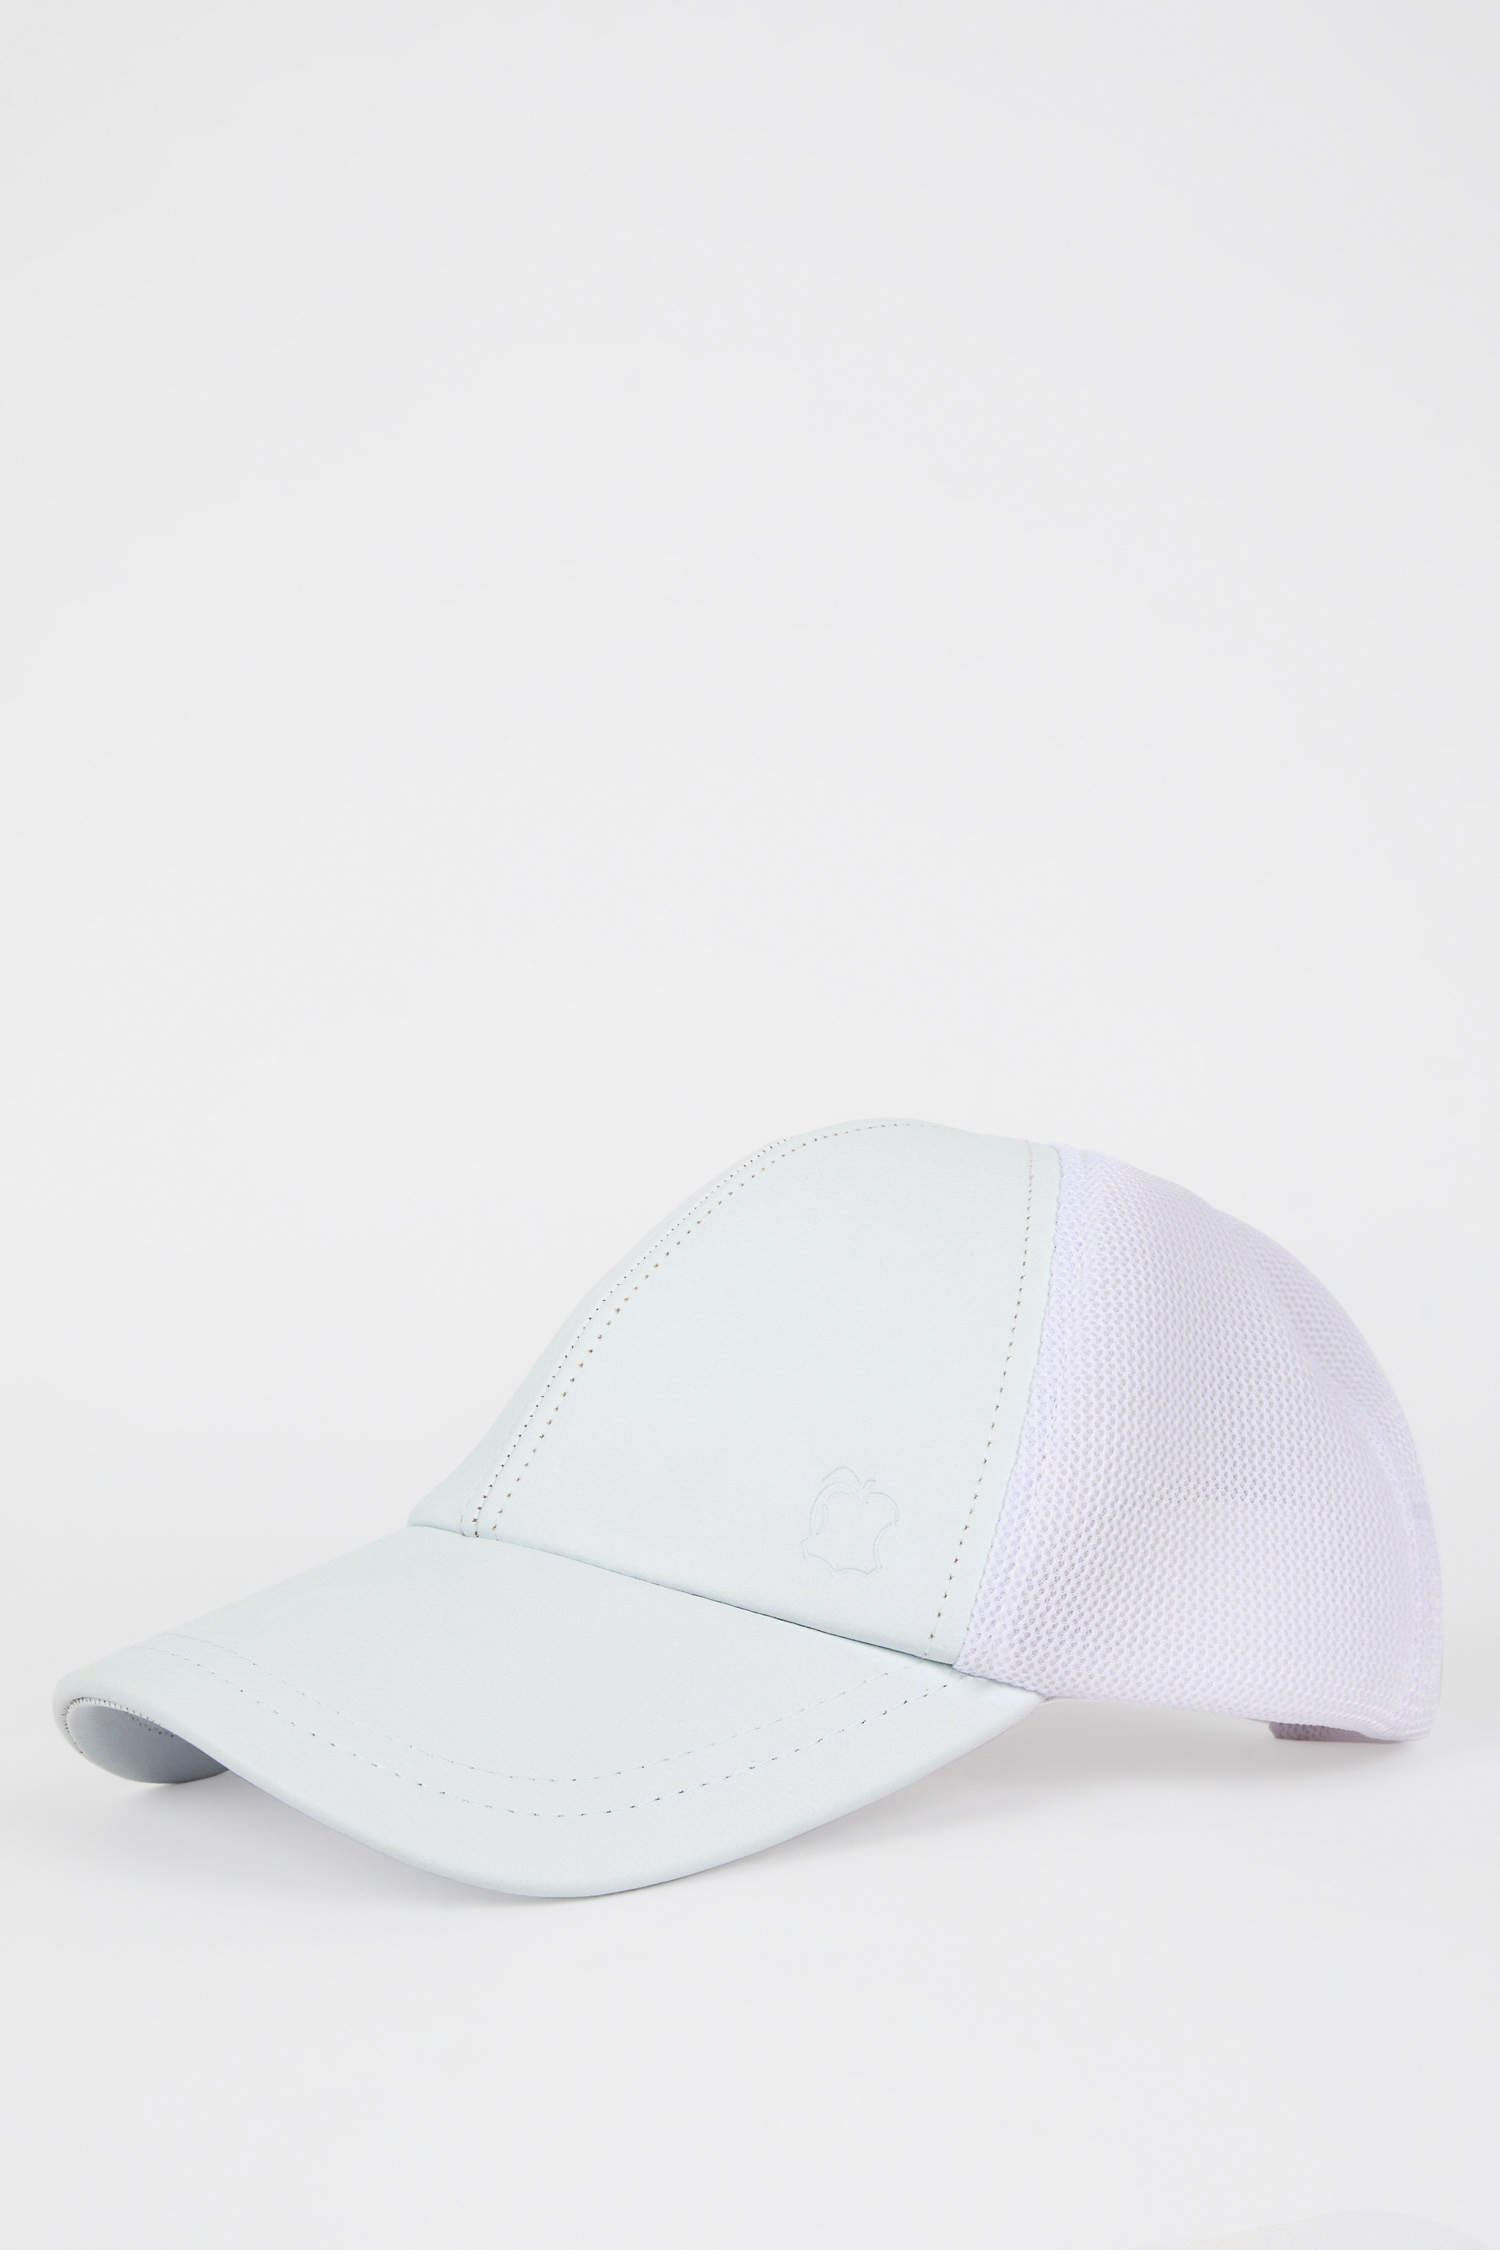 Defacto Kadın Elma Derisi Geri Dönüşümlü Beyaz Cap Şapka. 2